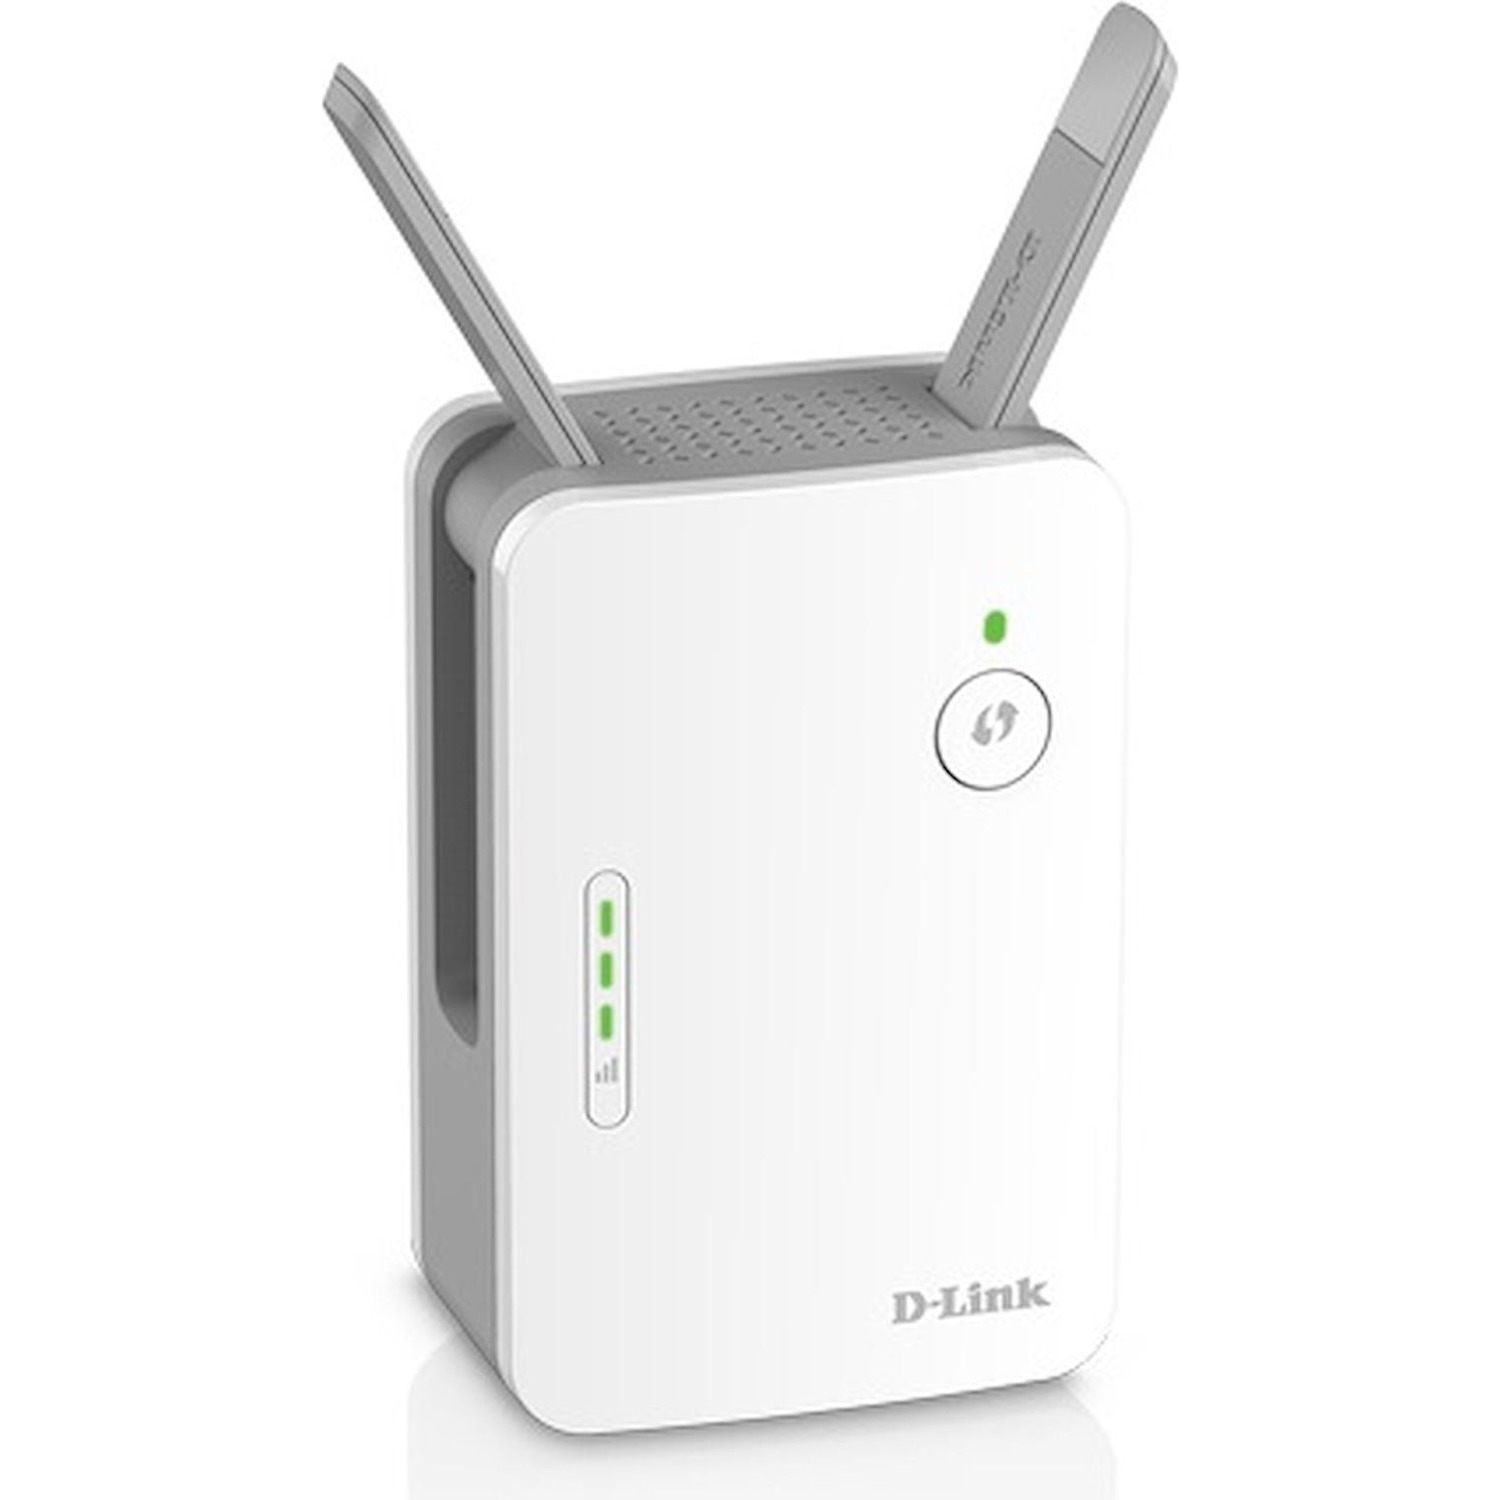 Immagine per Extender D-Link AC1200 LAN Wi-Fi dualband da DIMOStore